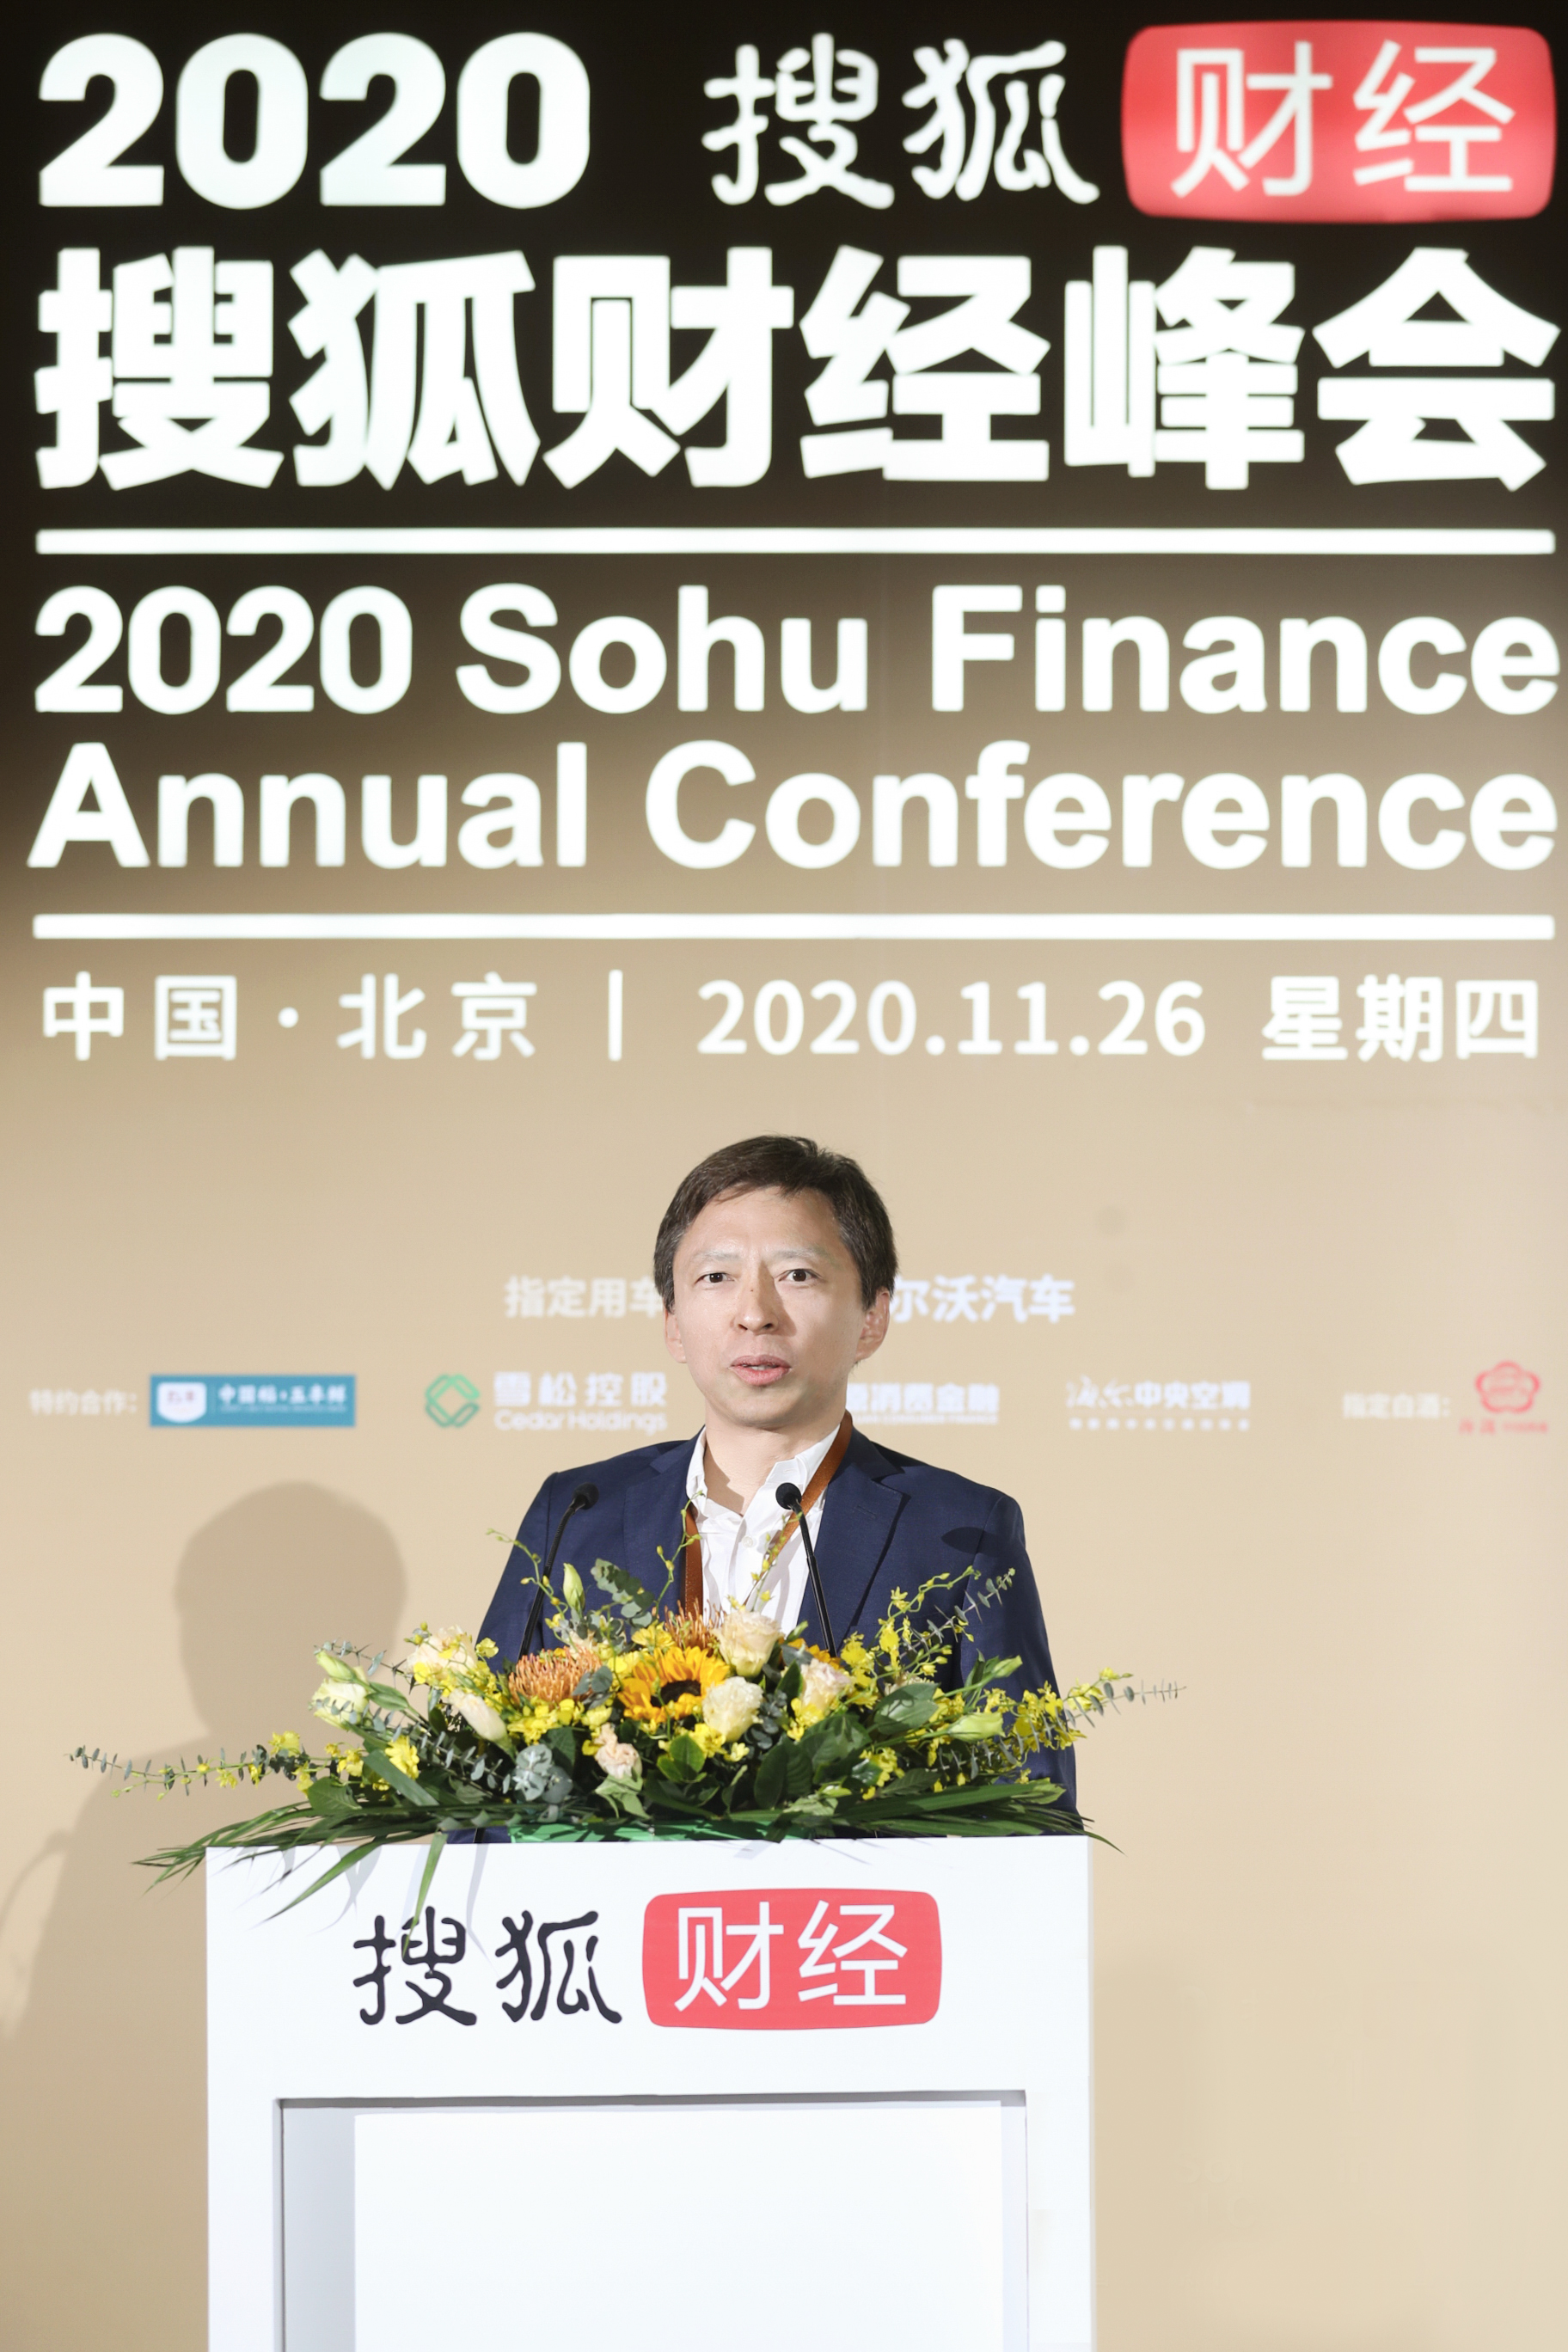 “2020搜狐财经峰会”大咖云集龙永图、黄奇帆这么看中国经济